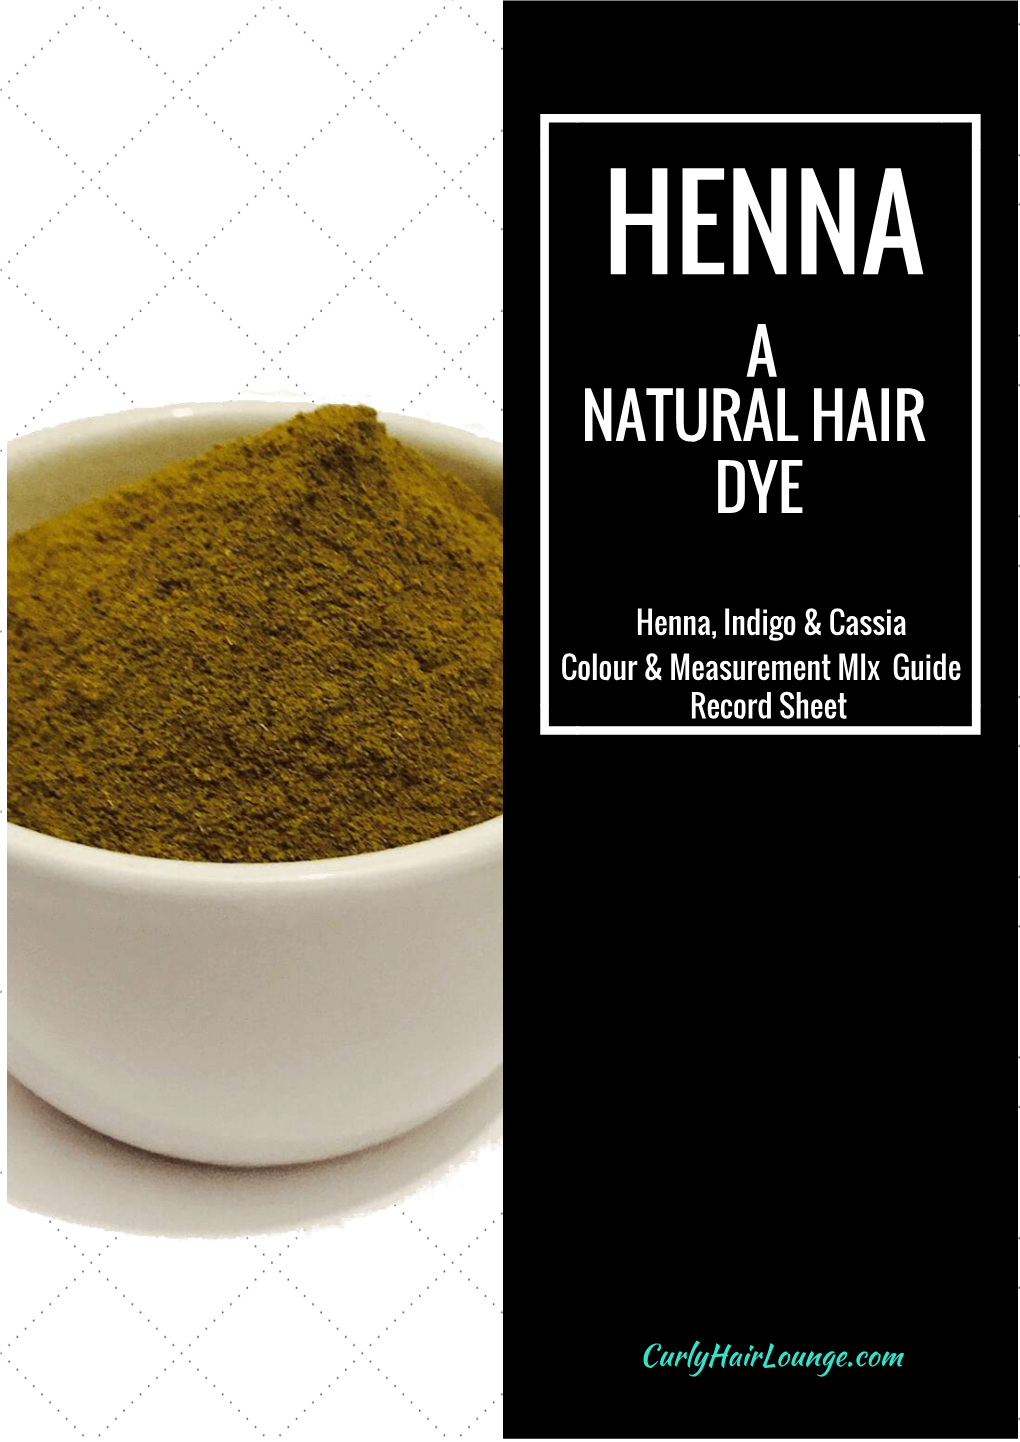 Henna As a Natural Hair Dye Guide